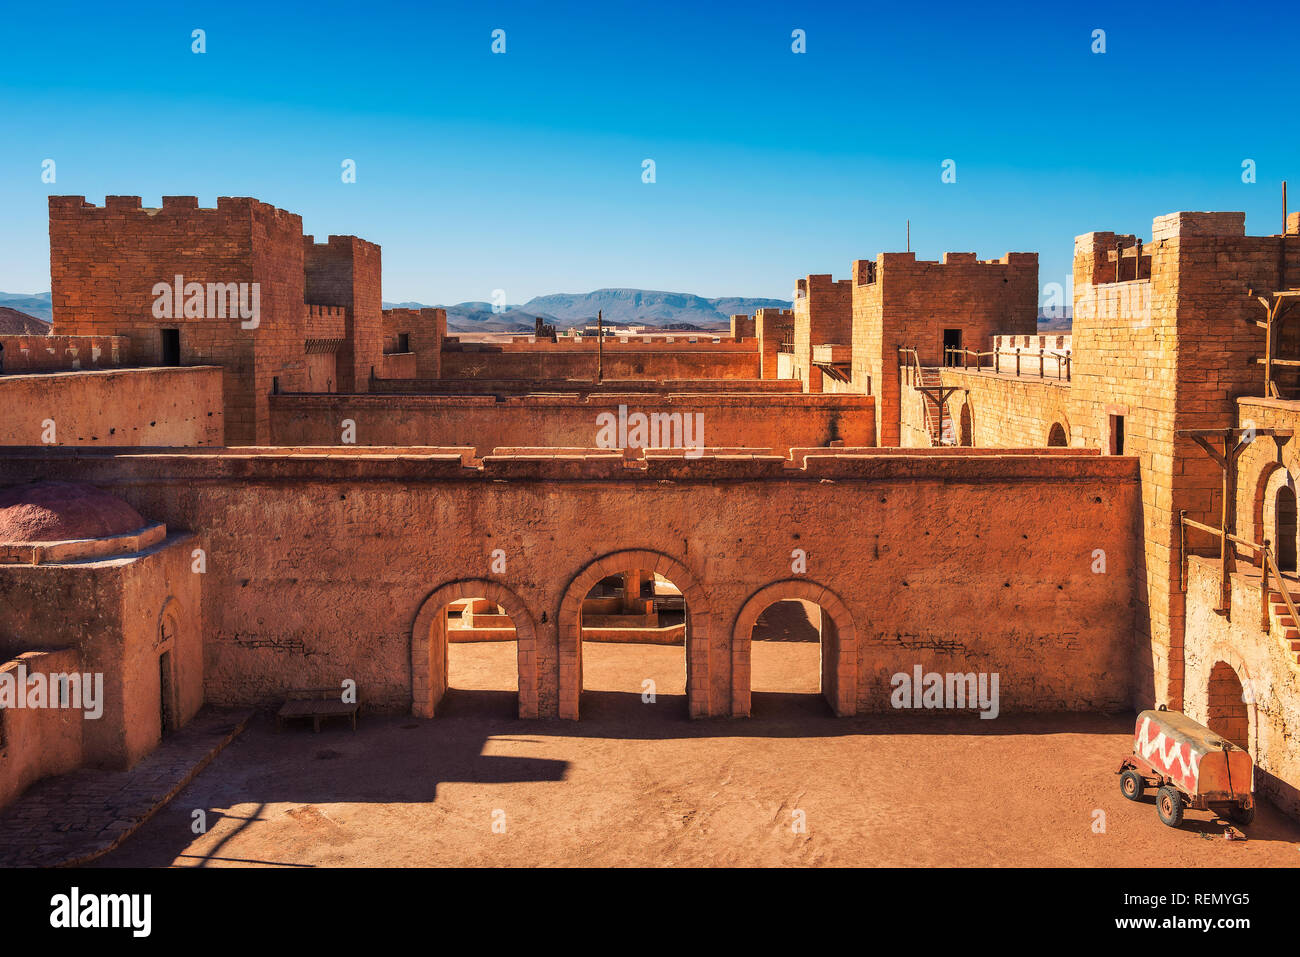 CLA Film Studios à Ouarzazate, Maroc Banque D'Images